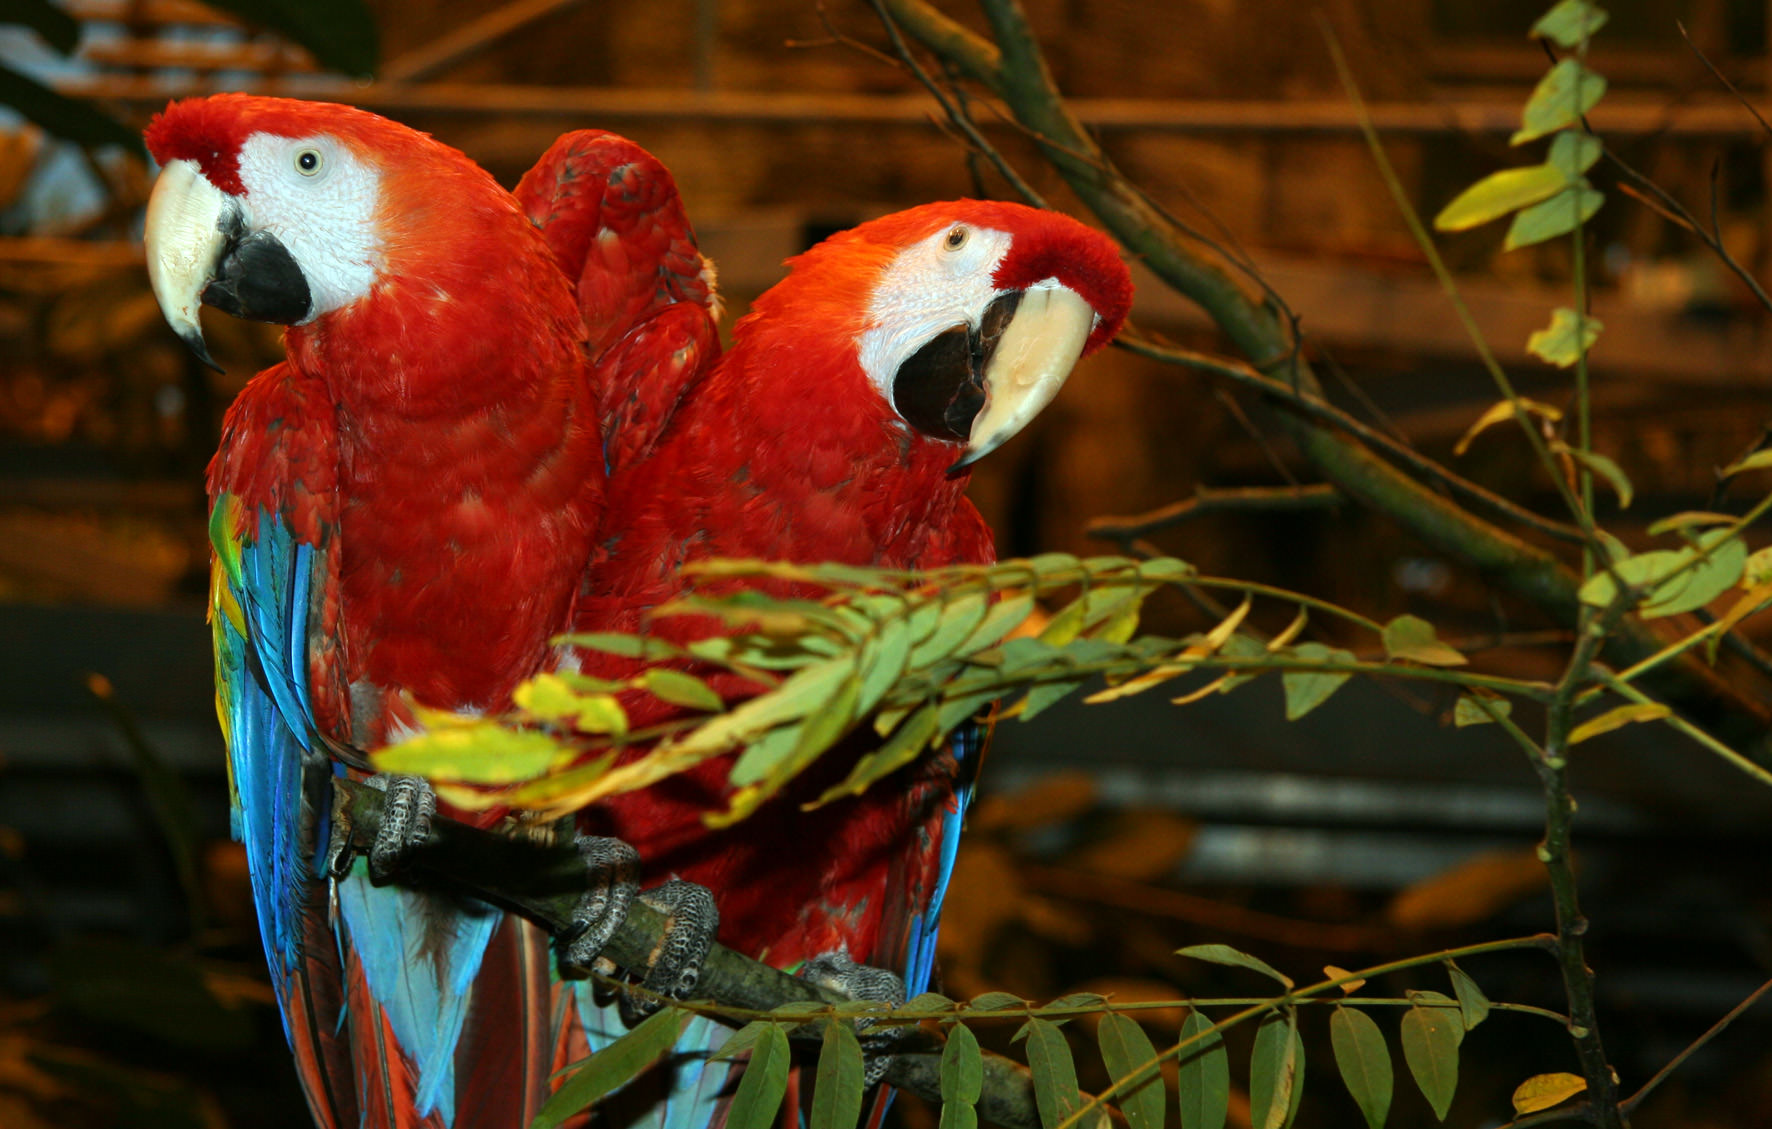 fra udsætningen af lyserød ara: Randers Regnskov - Tropical Zoo